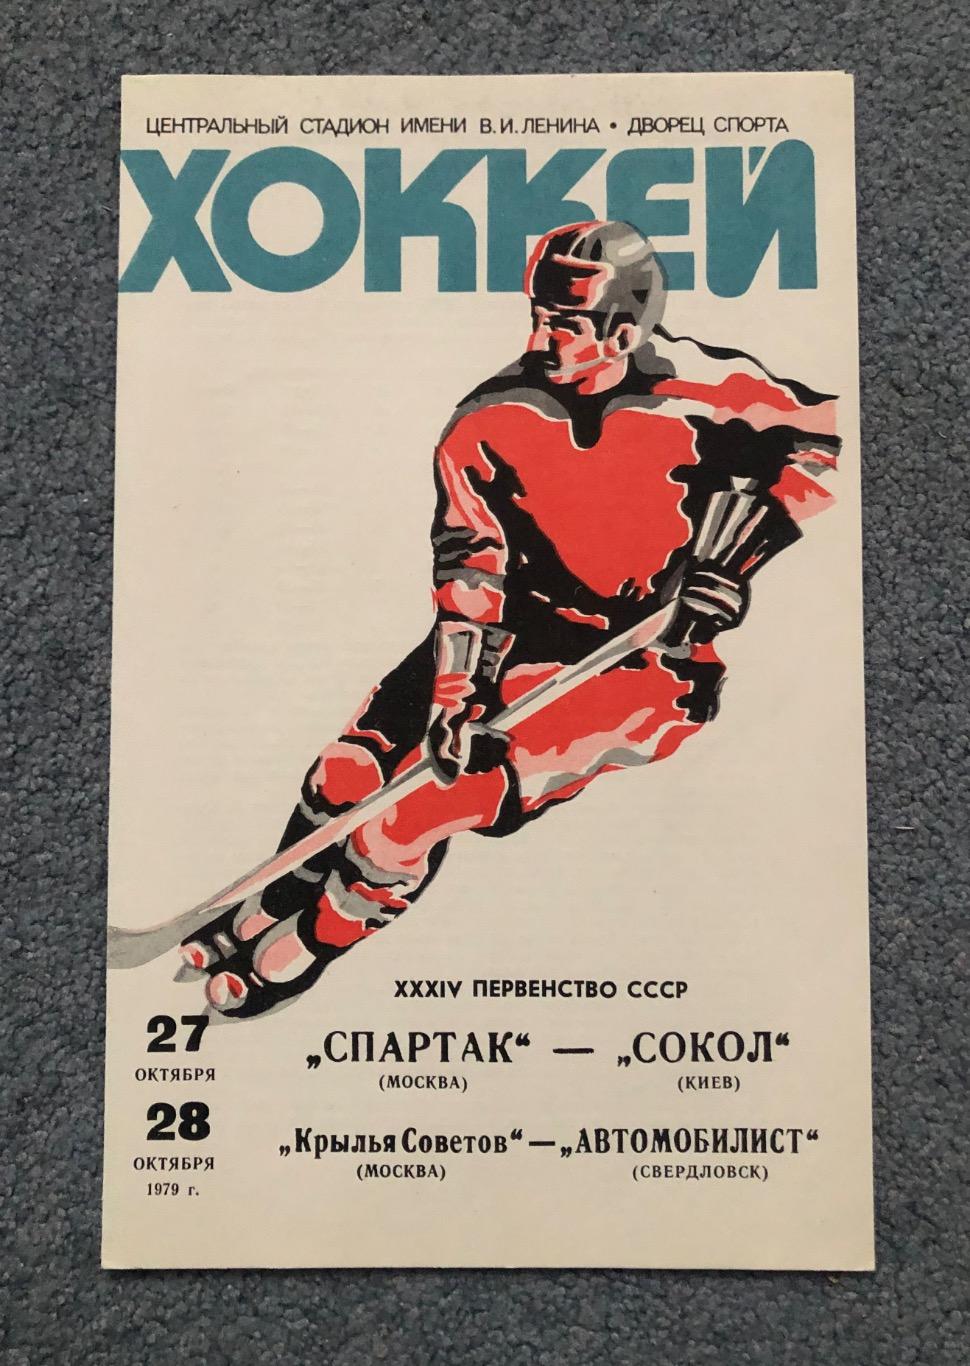 Спартак Москва - Сокол Киев, Крылья Советов - Автомобилист, 27 и 28.10.1979